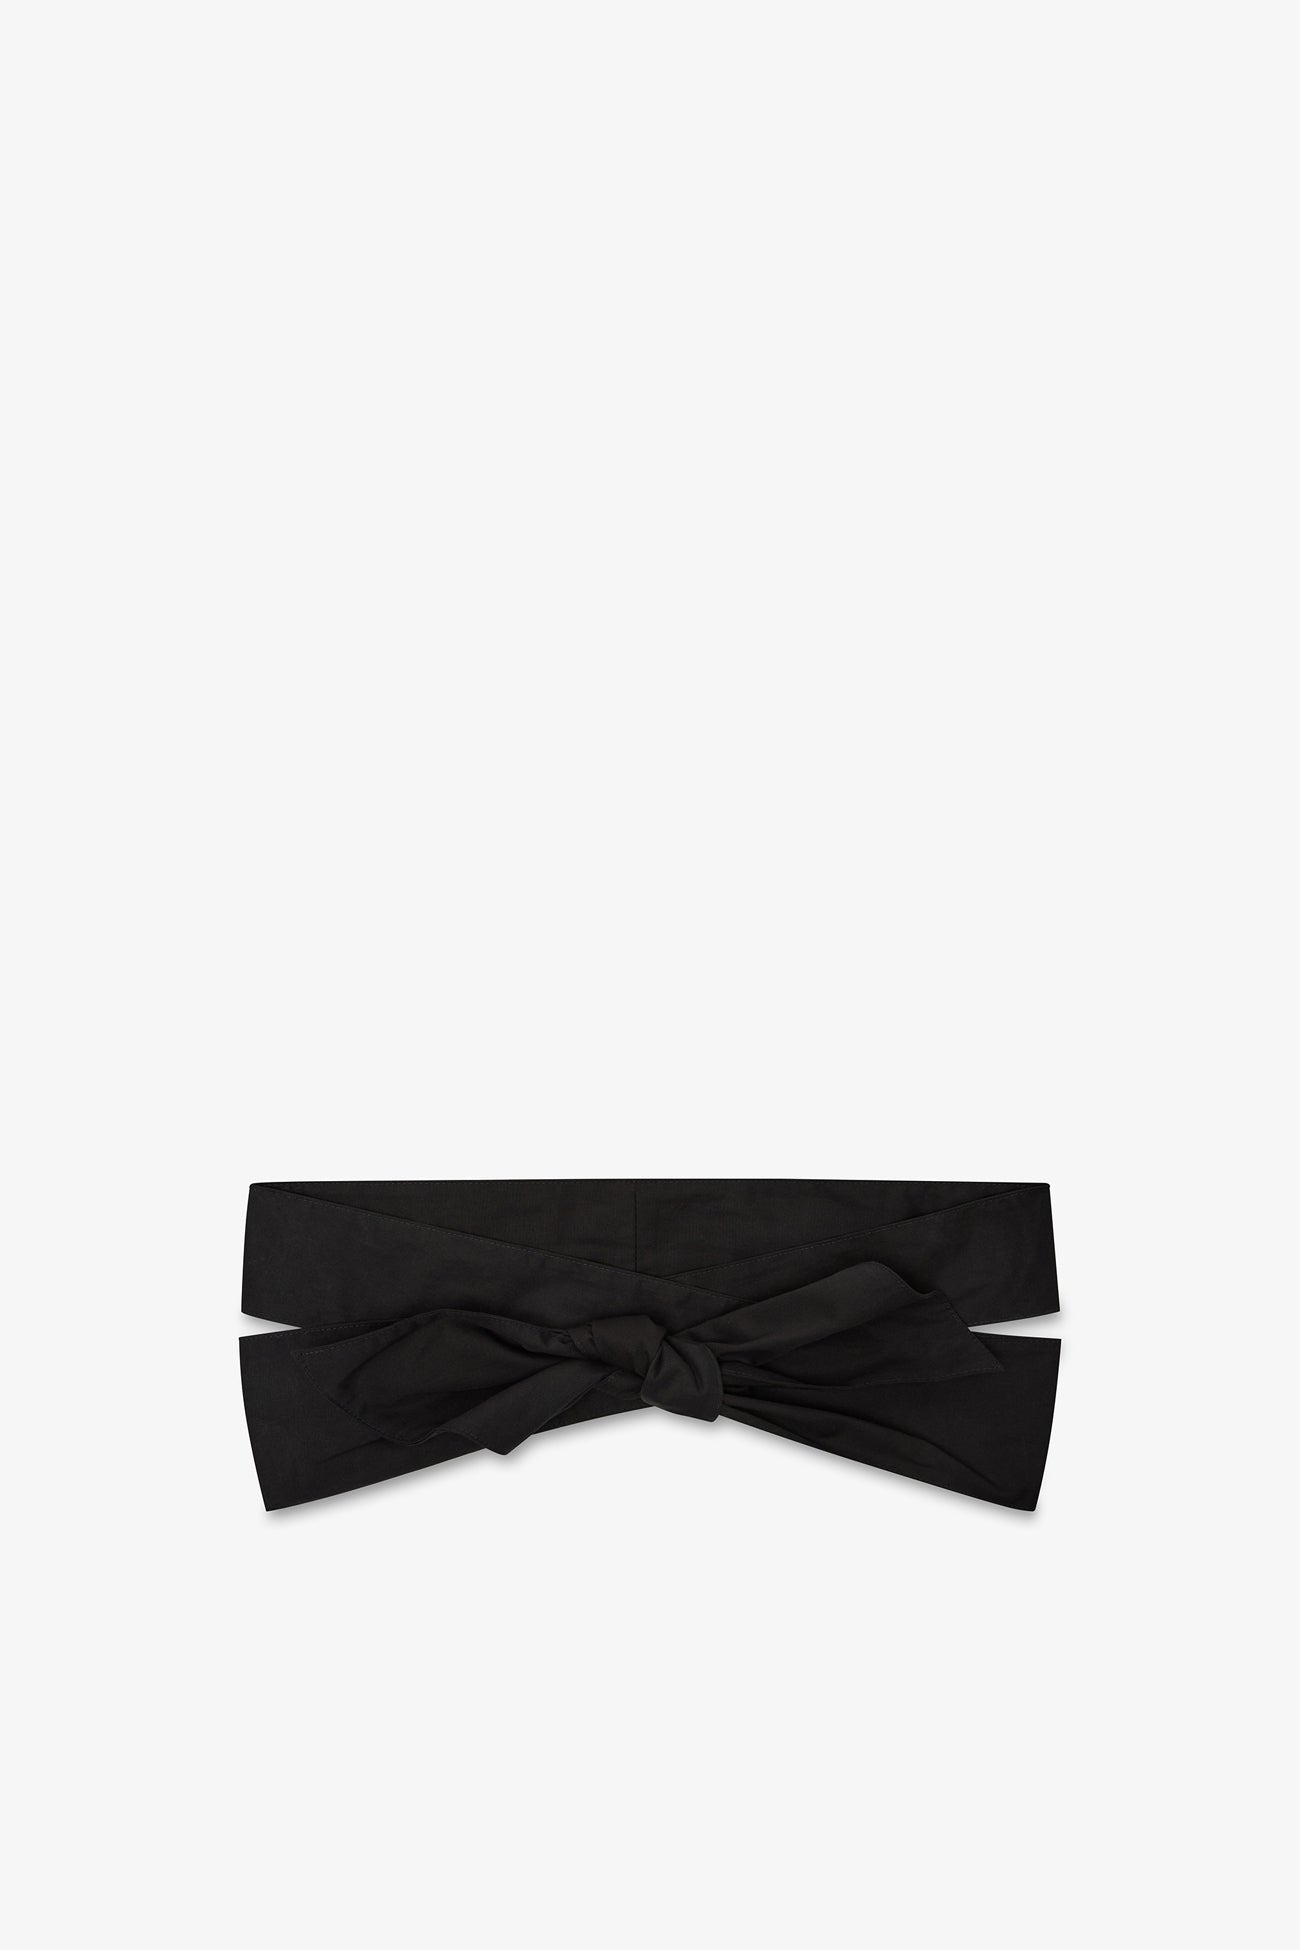 Black Cotton Tie Belt For Waist - Aiko Belt | Marcella